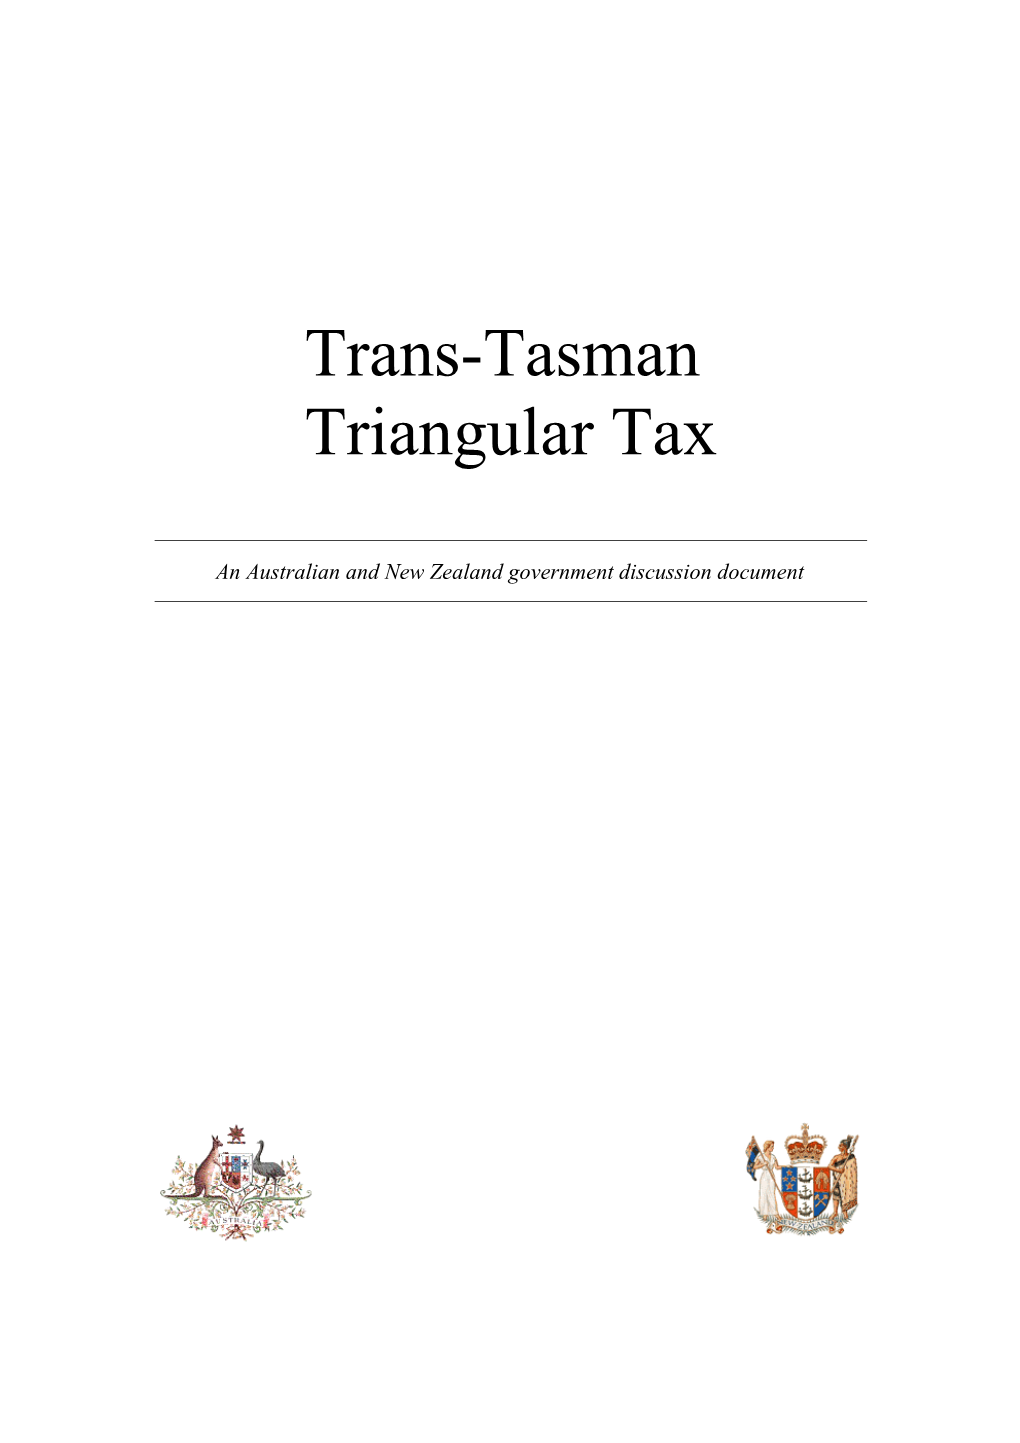 Trans-Tasman Triangular Tax